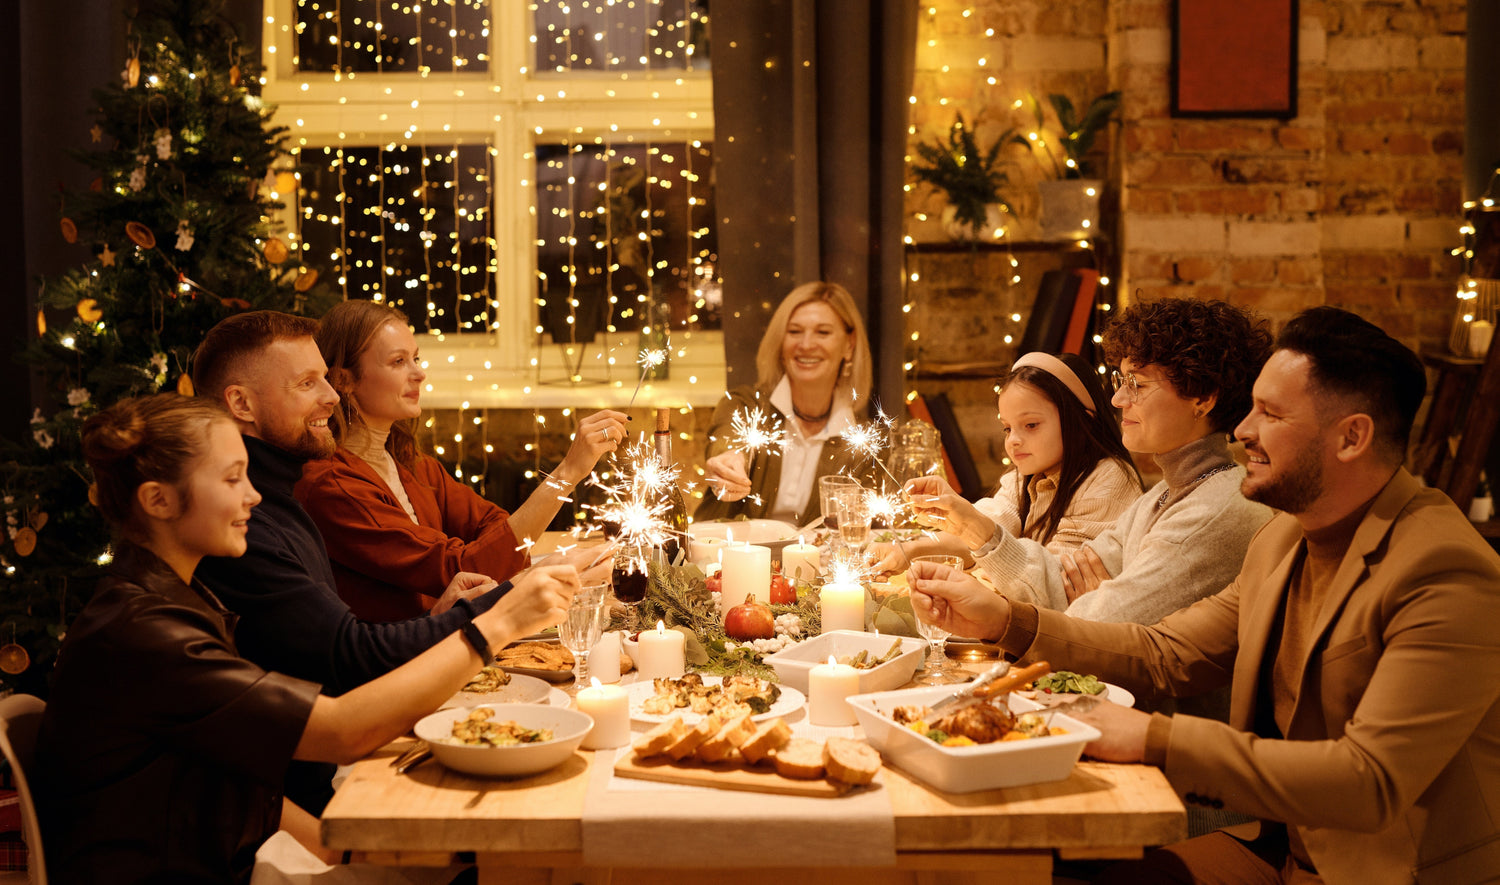 ¿Qué alimentos son indispensables en la típica cena navideña española? - Enrique Tomás